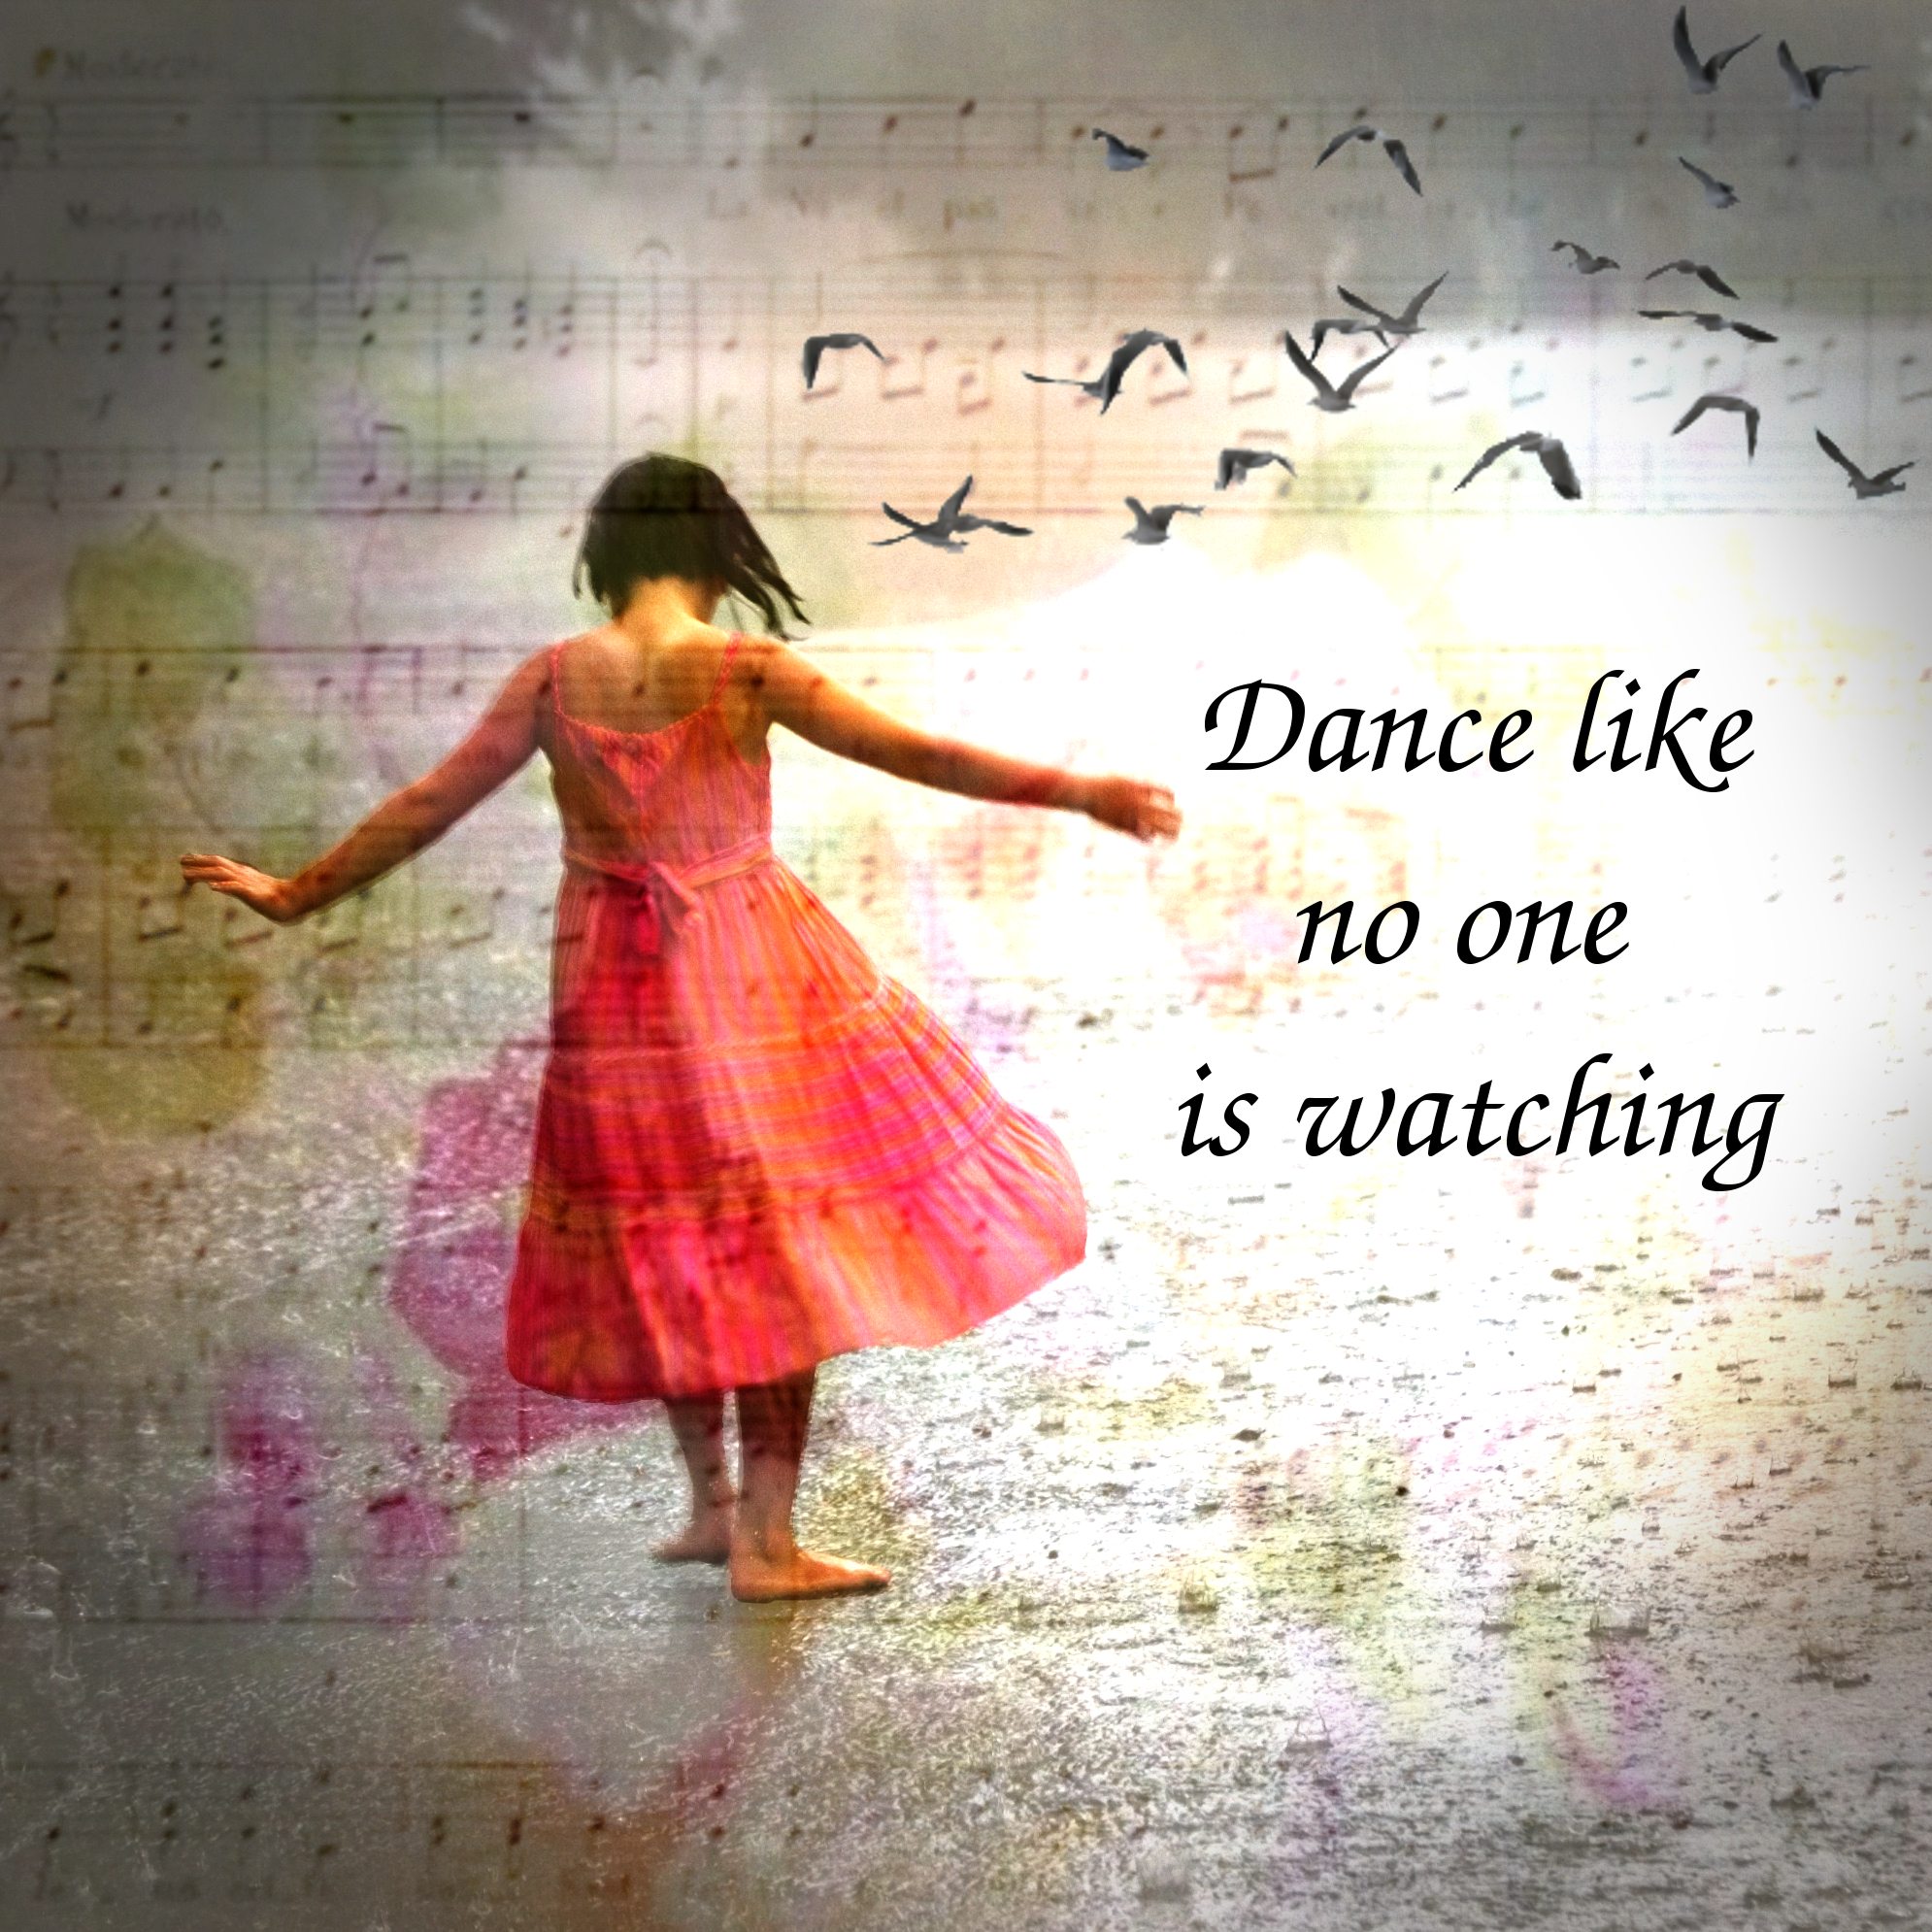 Танец про жизнь